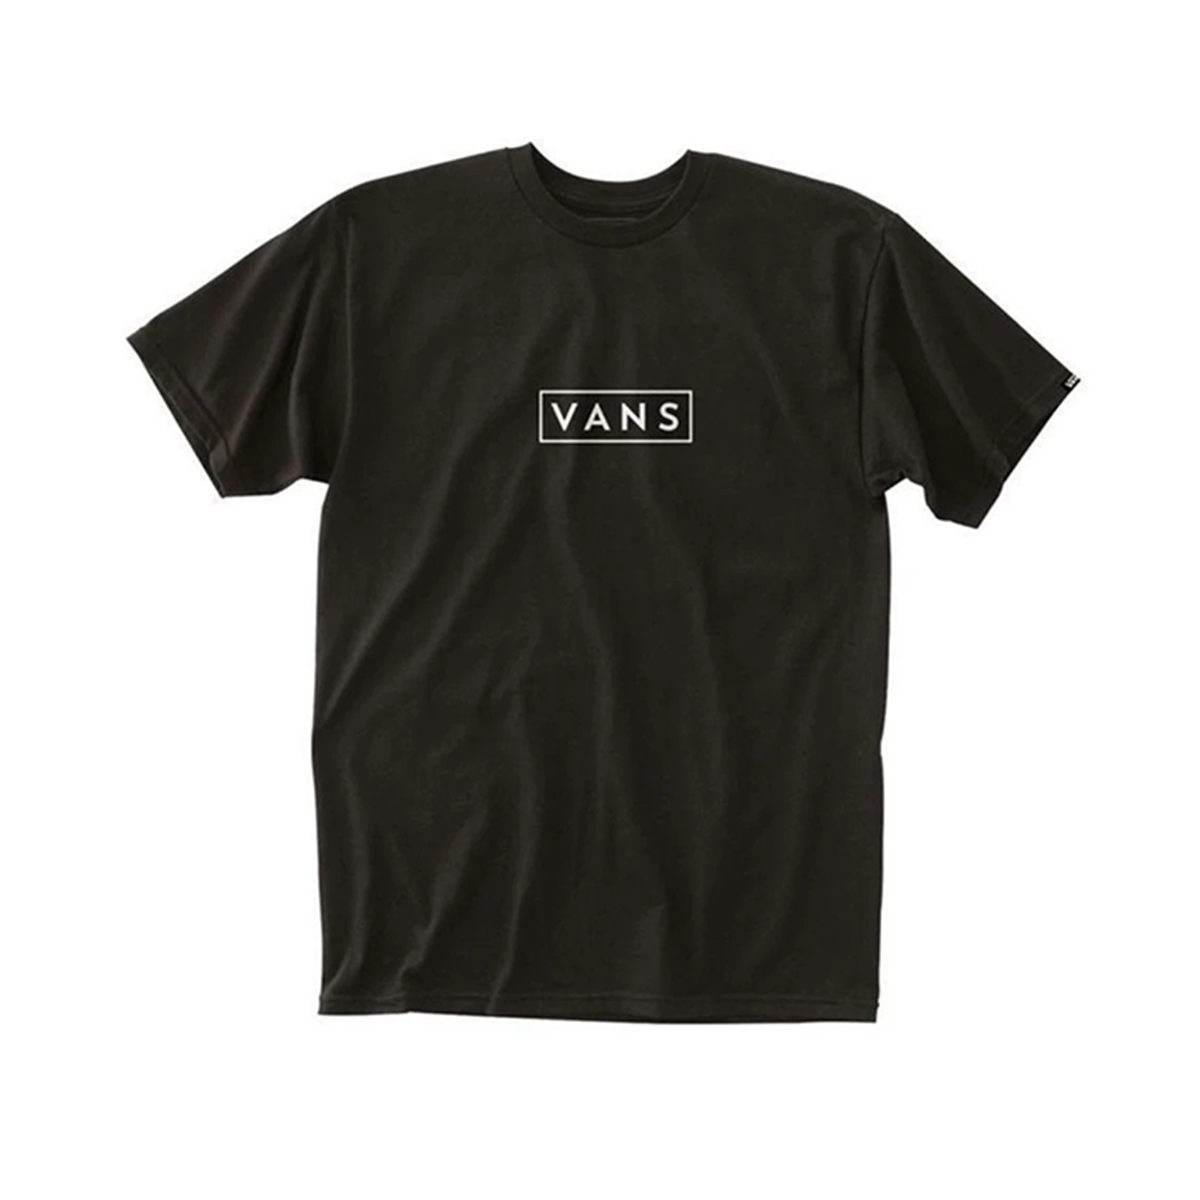 Vans Easy Box Fill Boys Shirt - Black/White